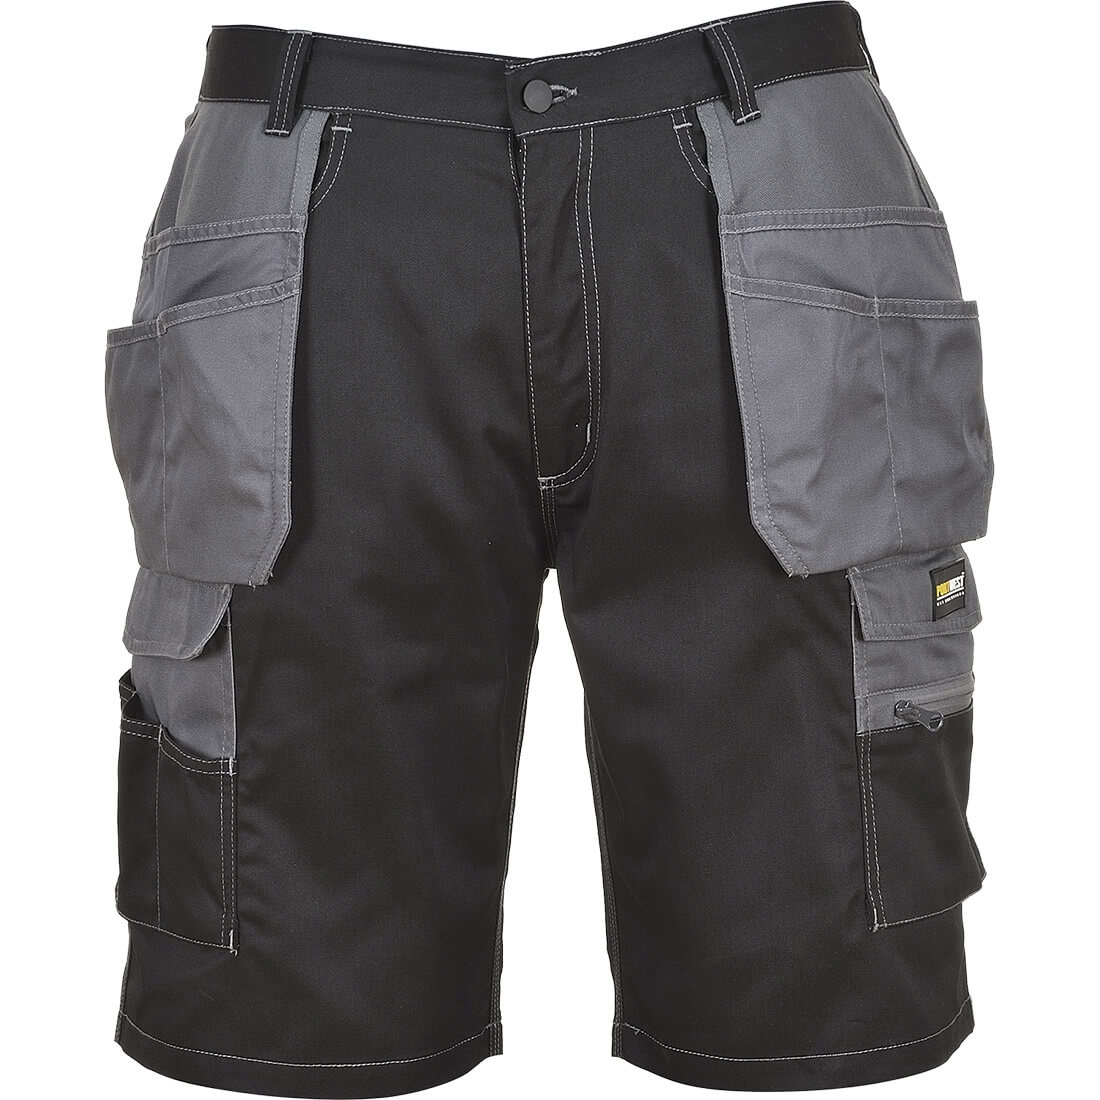 Shorts Granite - Les vêtements de protection